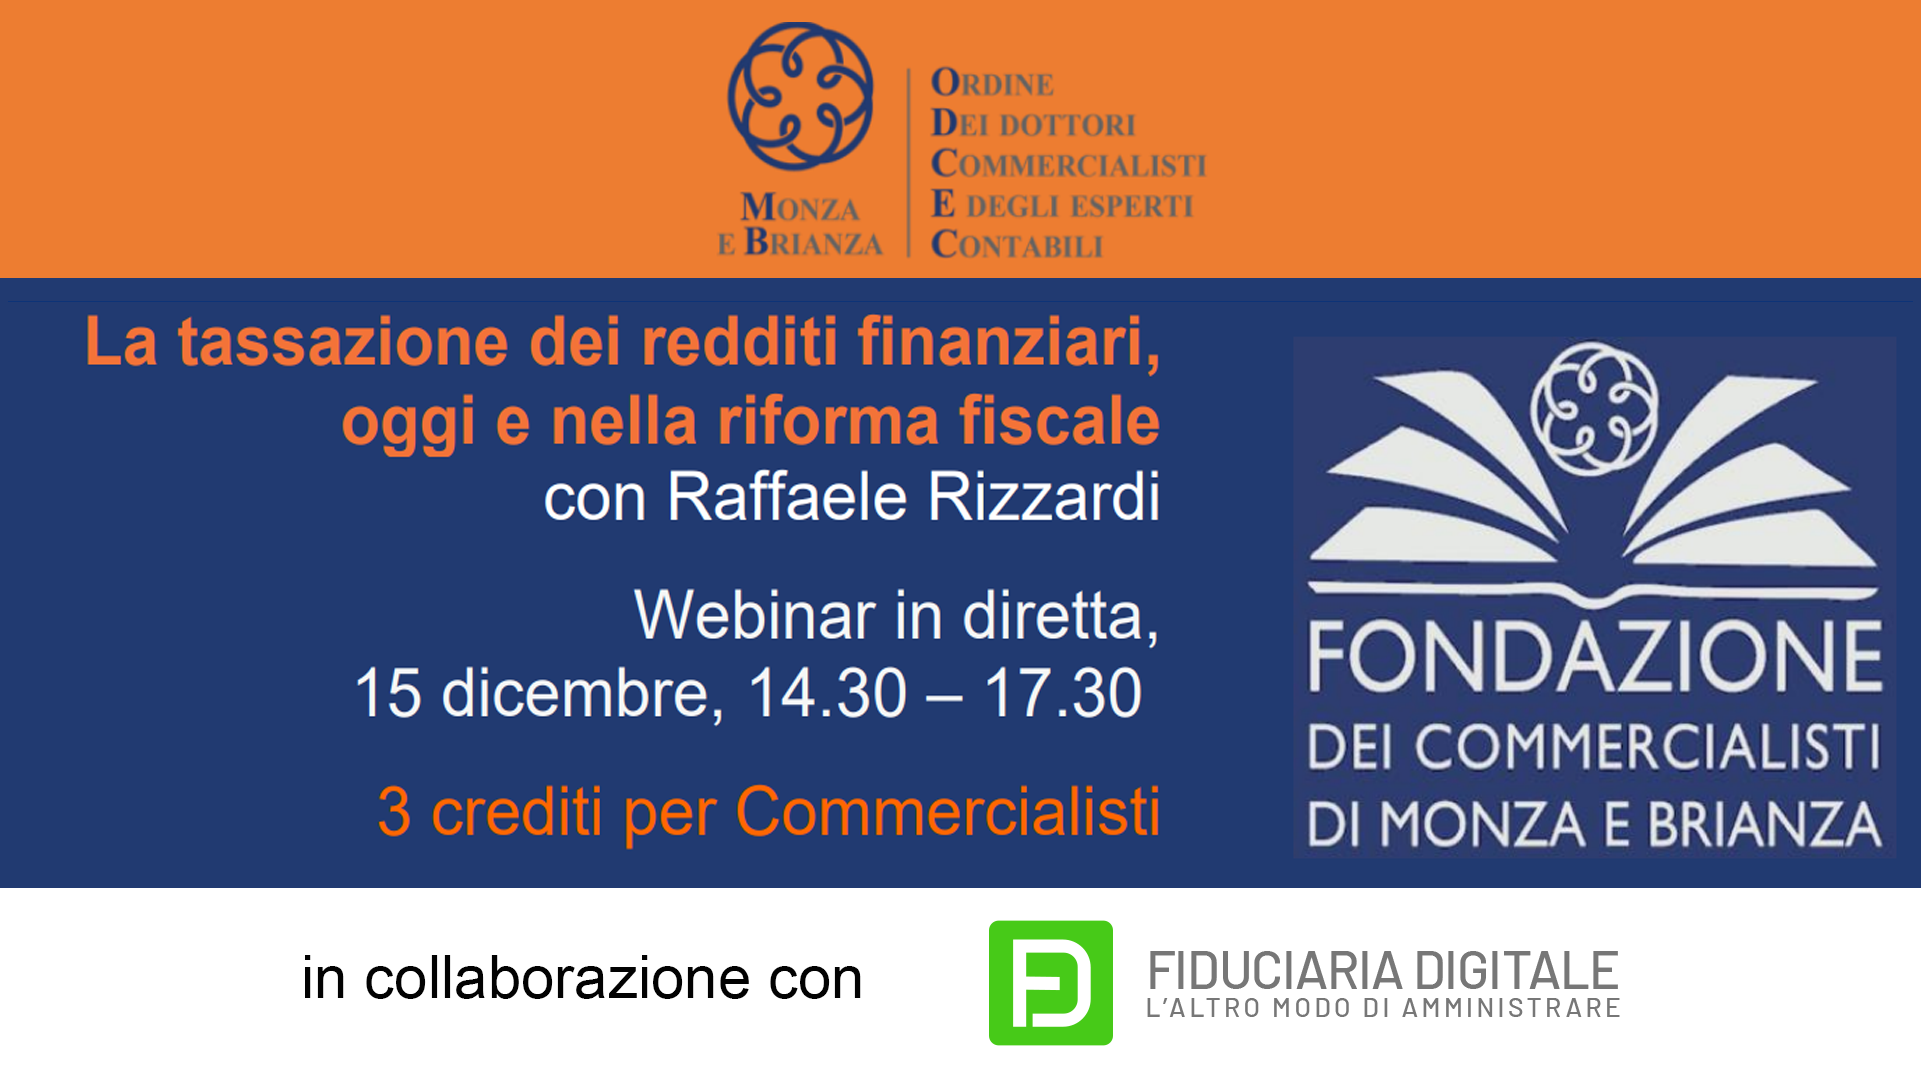 La tassazione dei redditi finanziari oggi e nella riforma fiscale – con Raffaele Rizzardi